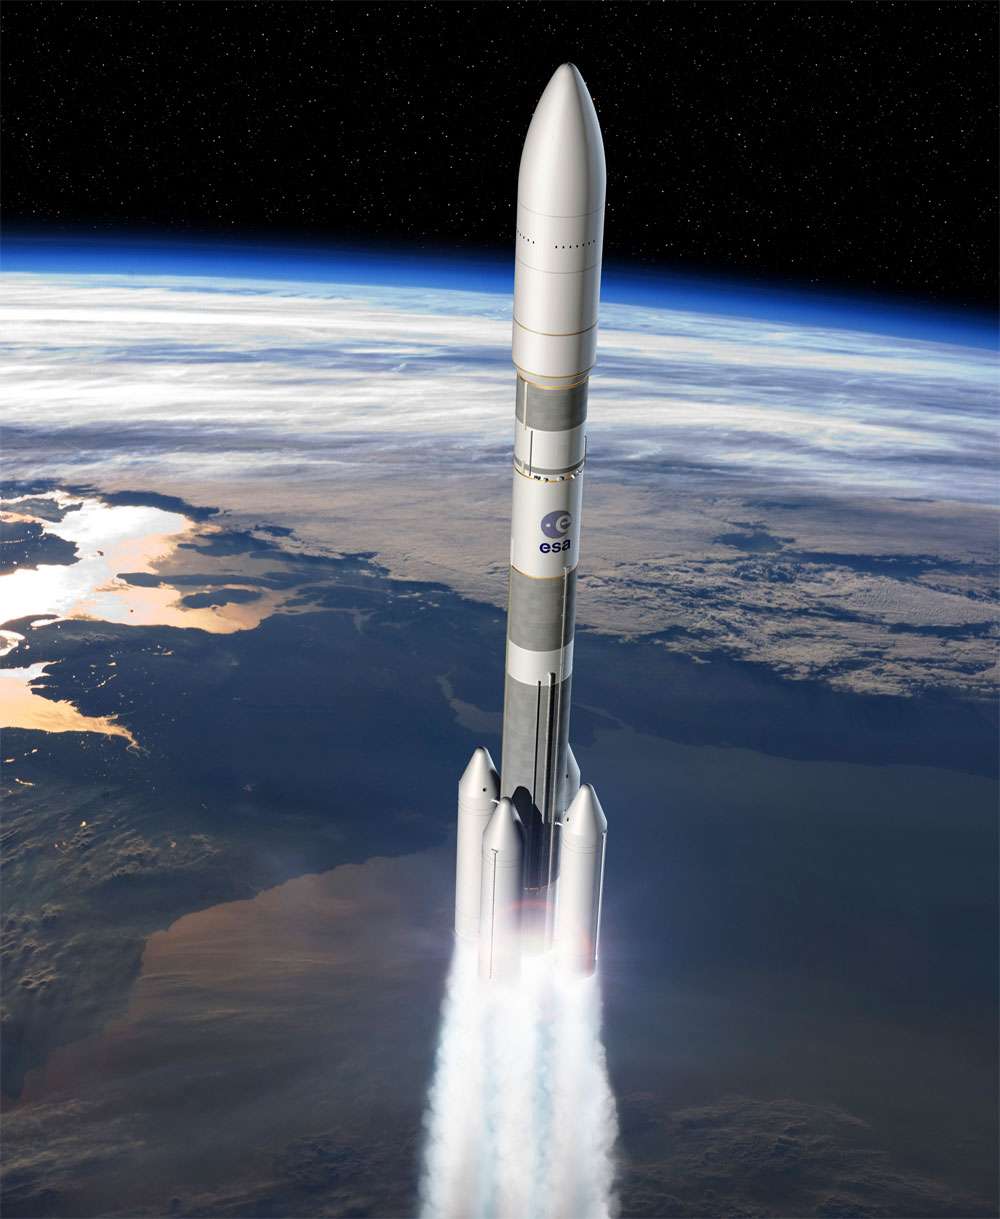 En donnant son feu vert au développement d'Ariane 6, l'Europe rassure les clients d'Arianespace qui, ainsi, étoffe son offre de services avec un lanceur moins coûteux qu'Ariane 5. © Esa, D. Ducros